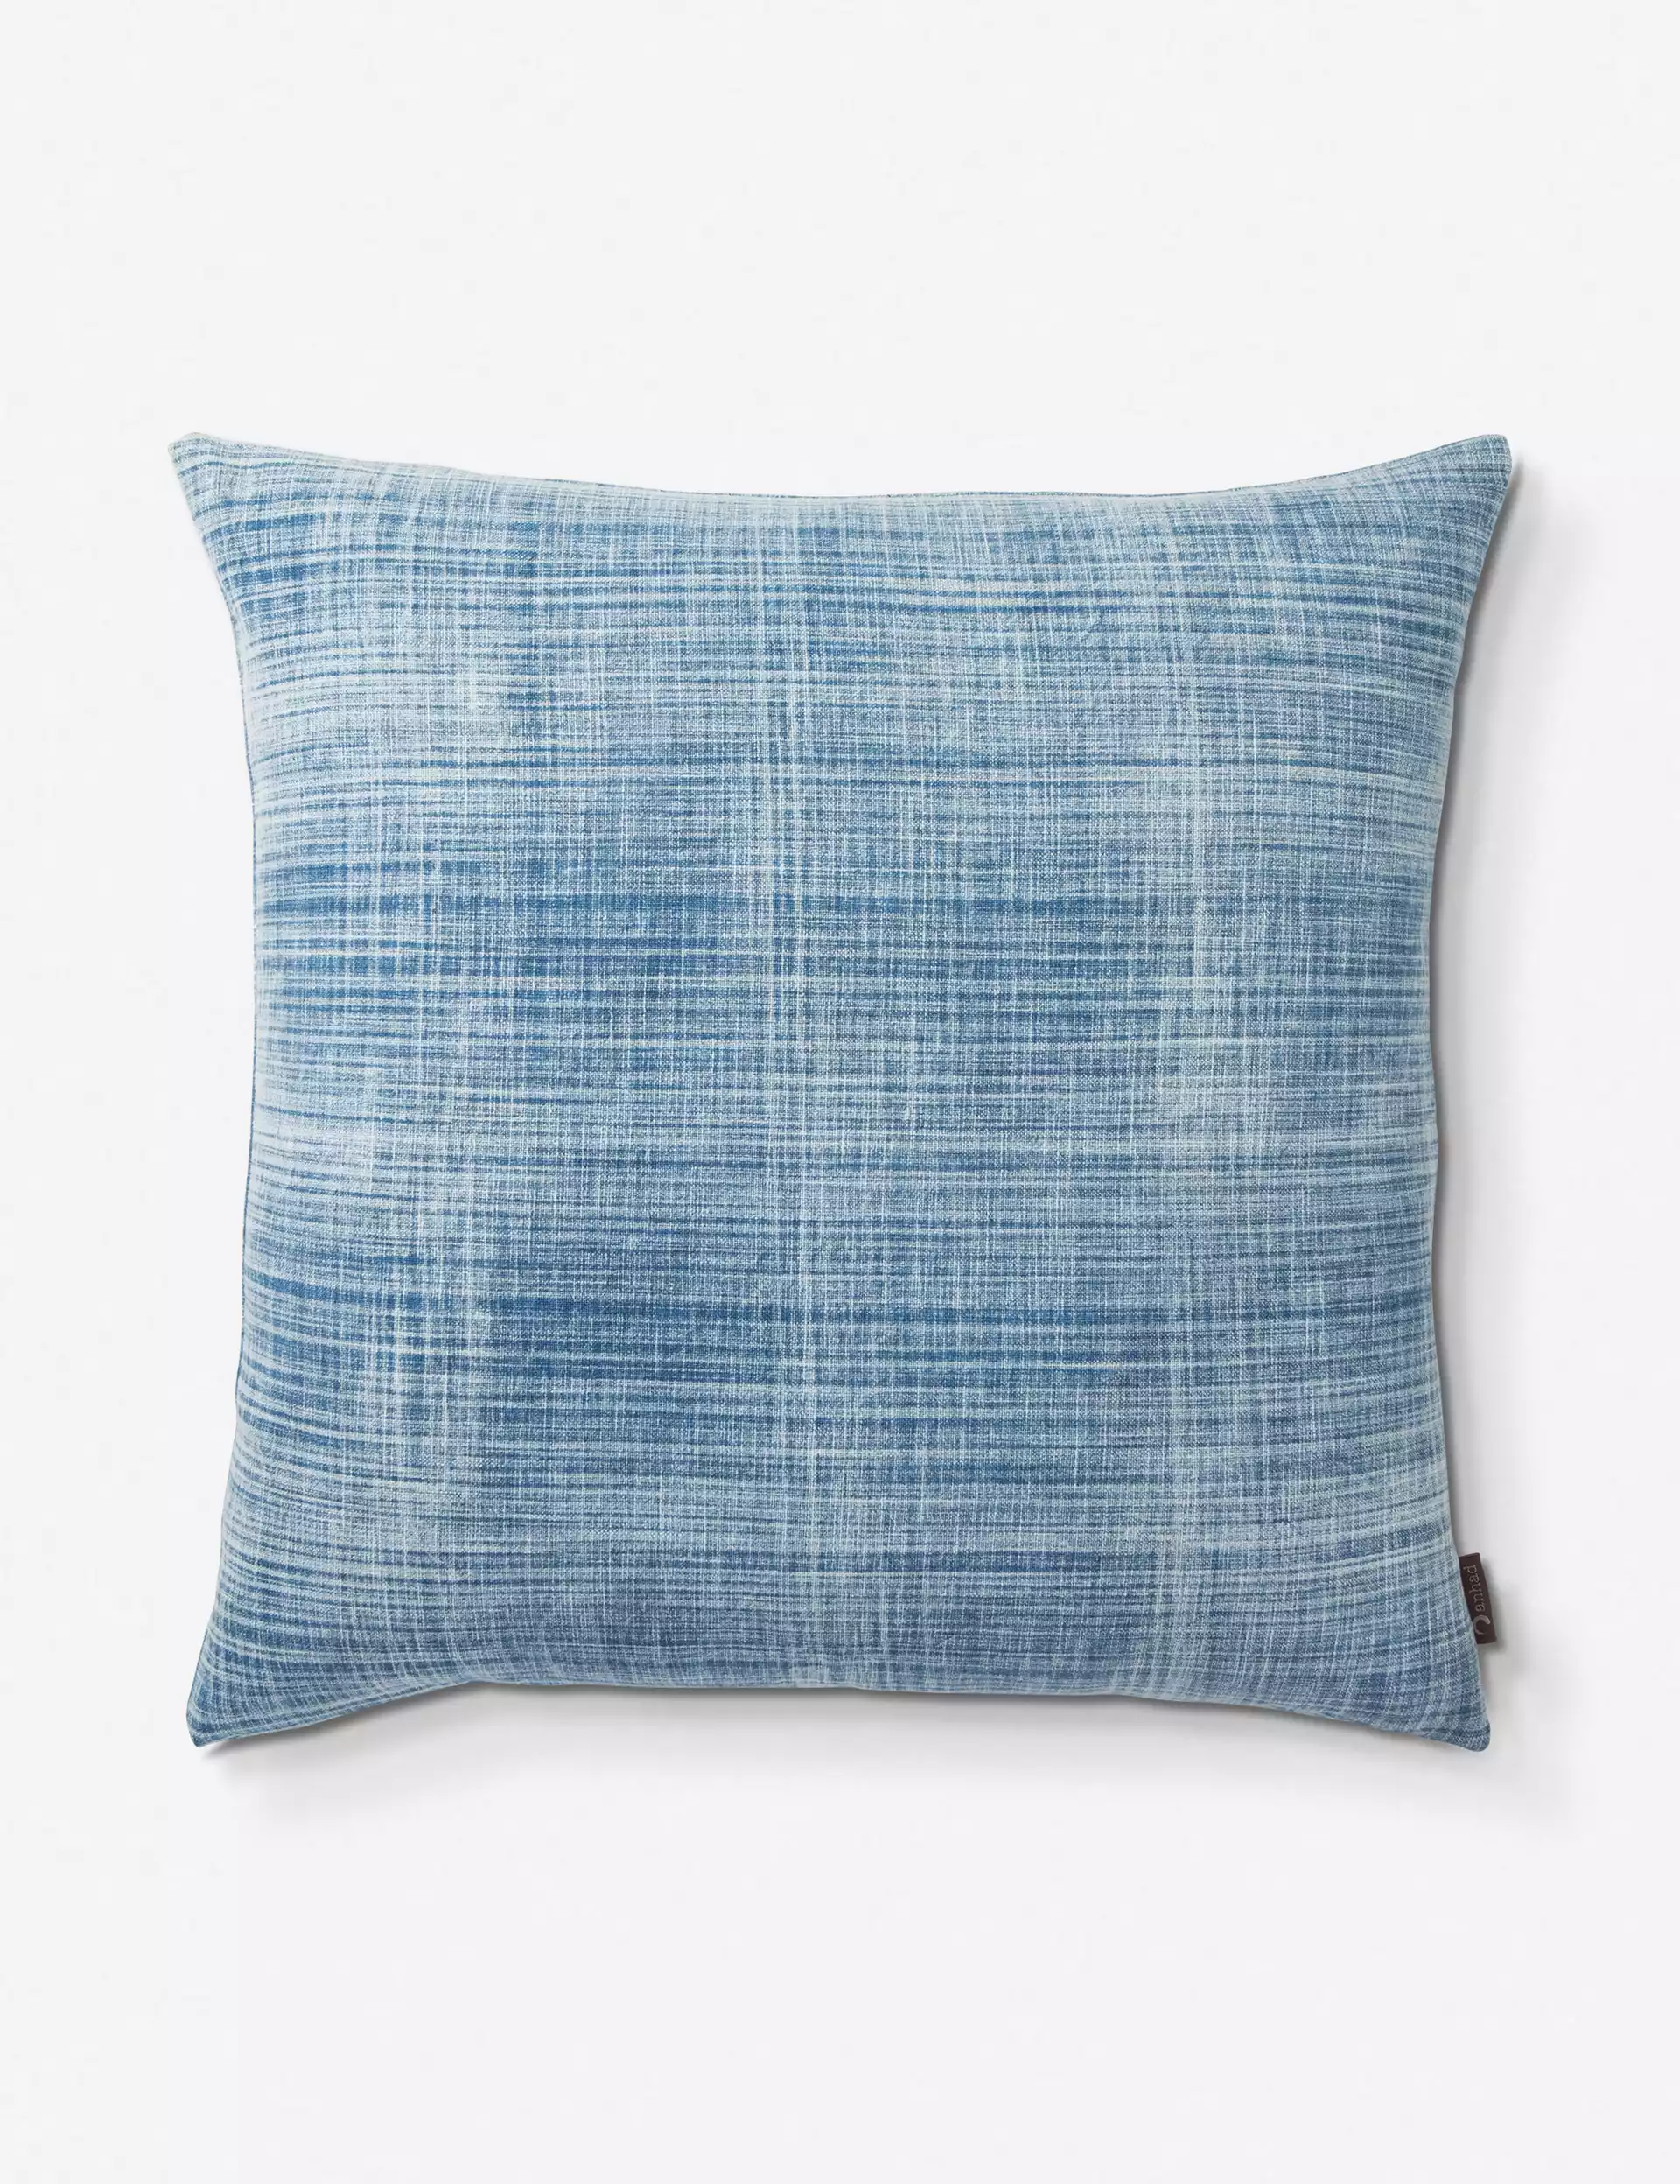 Sharleen Pillow, Blue 22" x 22"